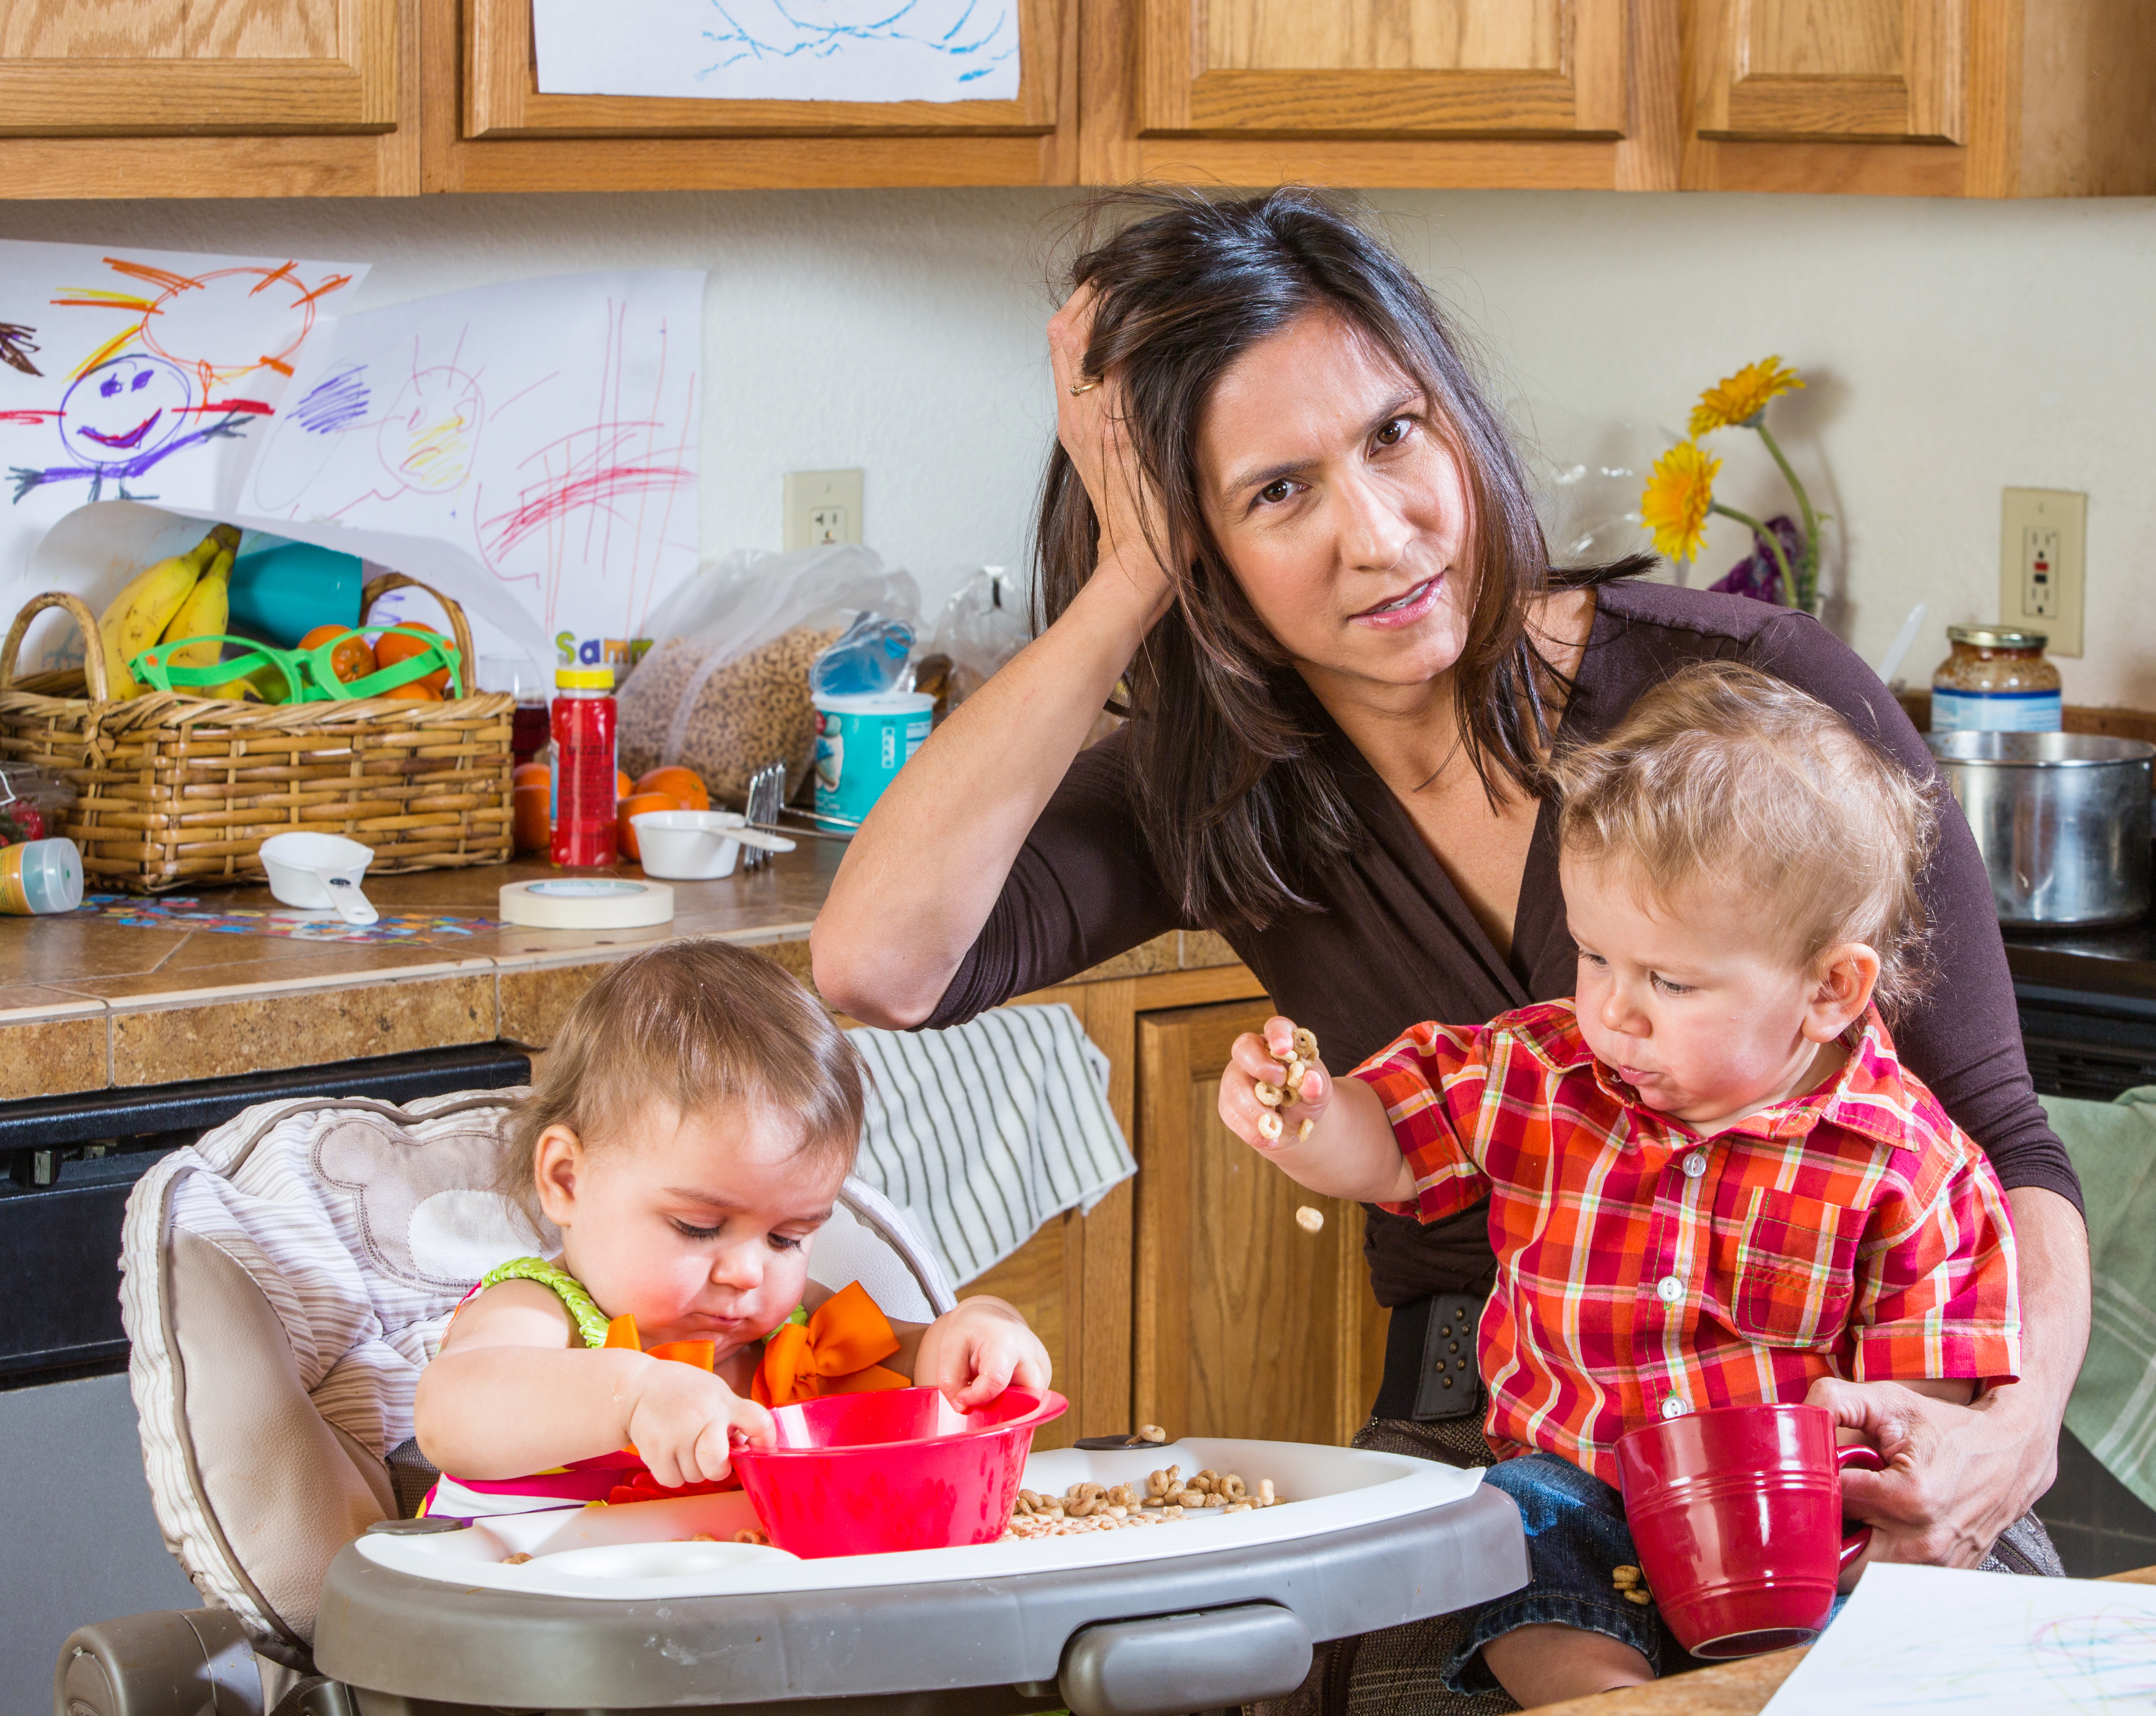 Une mère stressée dans la cuisine avec ses bébés | Source : Shutterstock